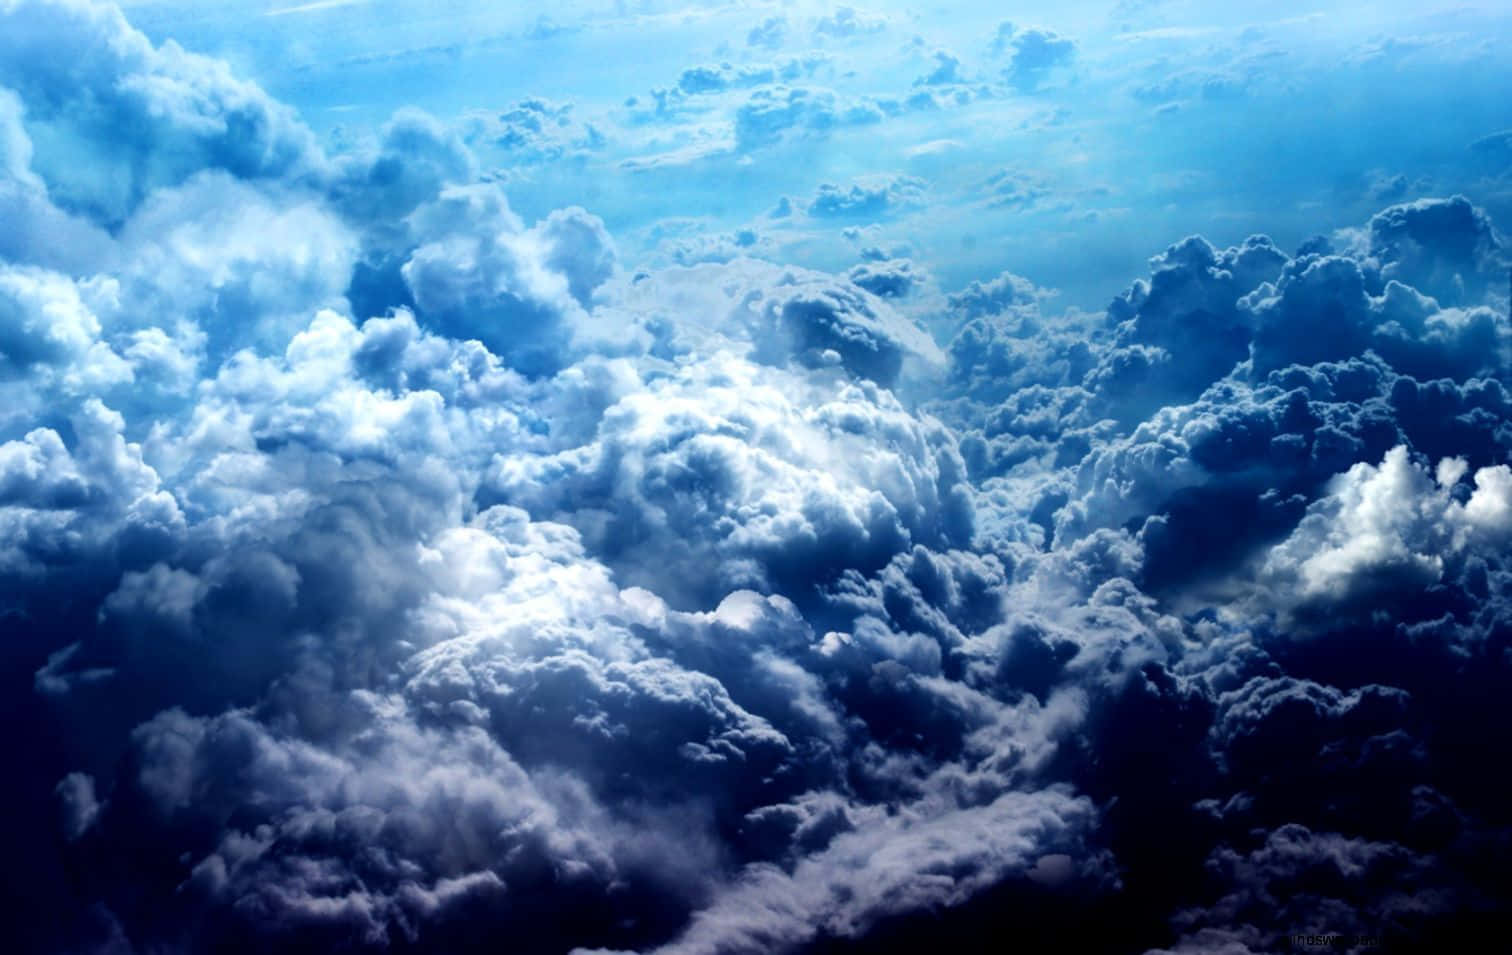 Strahlendblaue Himmel, Kontrastiert Mit Sanft Schwebenden Weißen Wolken, Bilden Ein Erhaben Friedliches Paradies. Wallpaper